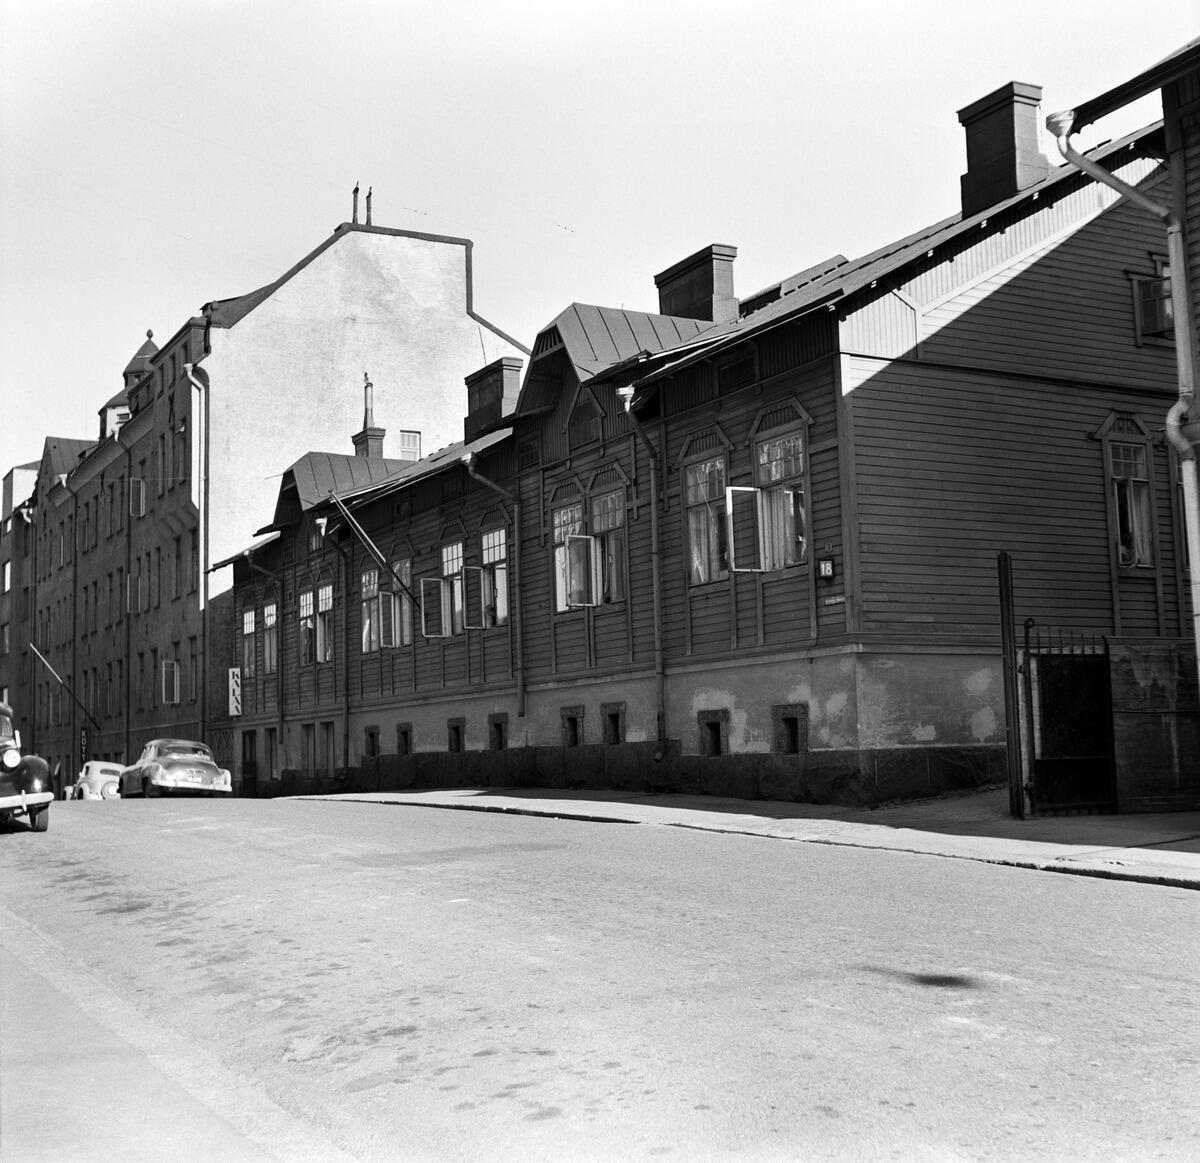 Wesa (kuvassa vasemmalla) oli epätyypillinen Kolibri-korttelin talo, sillä se ei ollut puutalo. Sen rakentamisaikaan 1900-luvun alussa saman korttelin ja monet lähialueiden talot olivat pääasiassa yhden asuinkerroksen ja kellarikerroksen puisia pienkerrostaloja, jotka myöhemmin purettiin korkeampien kivitalojen tieltä, kuten kuvassa oikealla oleva Vuorimiehenkatu 18:n puutalo. Kuvaaja: Helsingin kaupunginmuseo / Constantin Grünberg